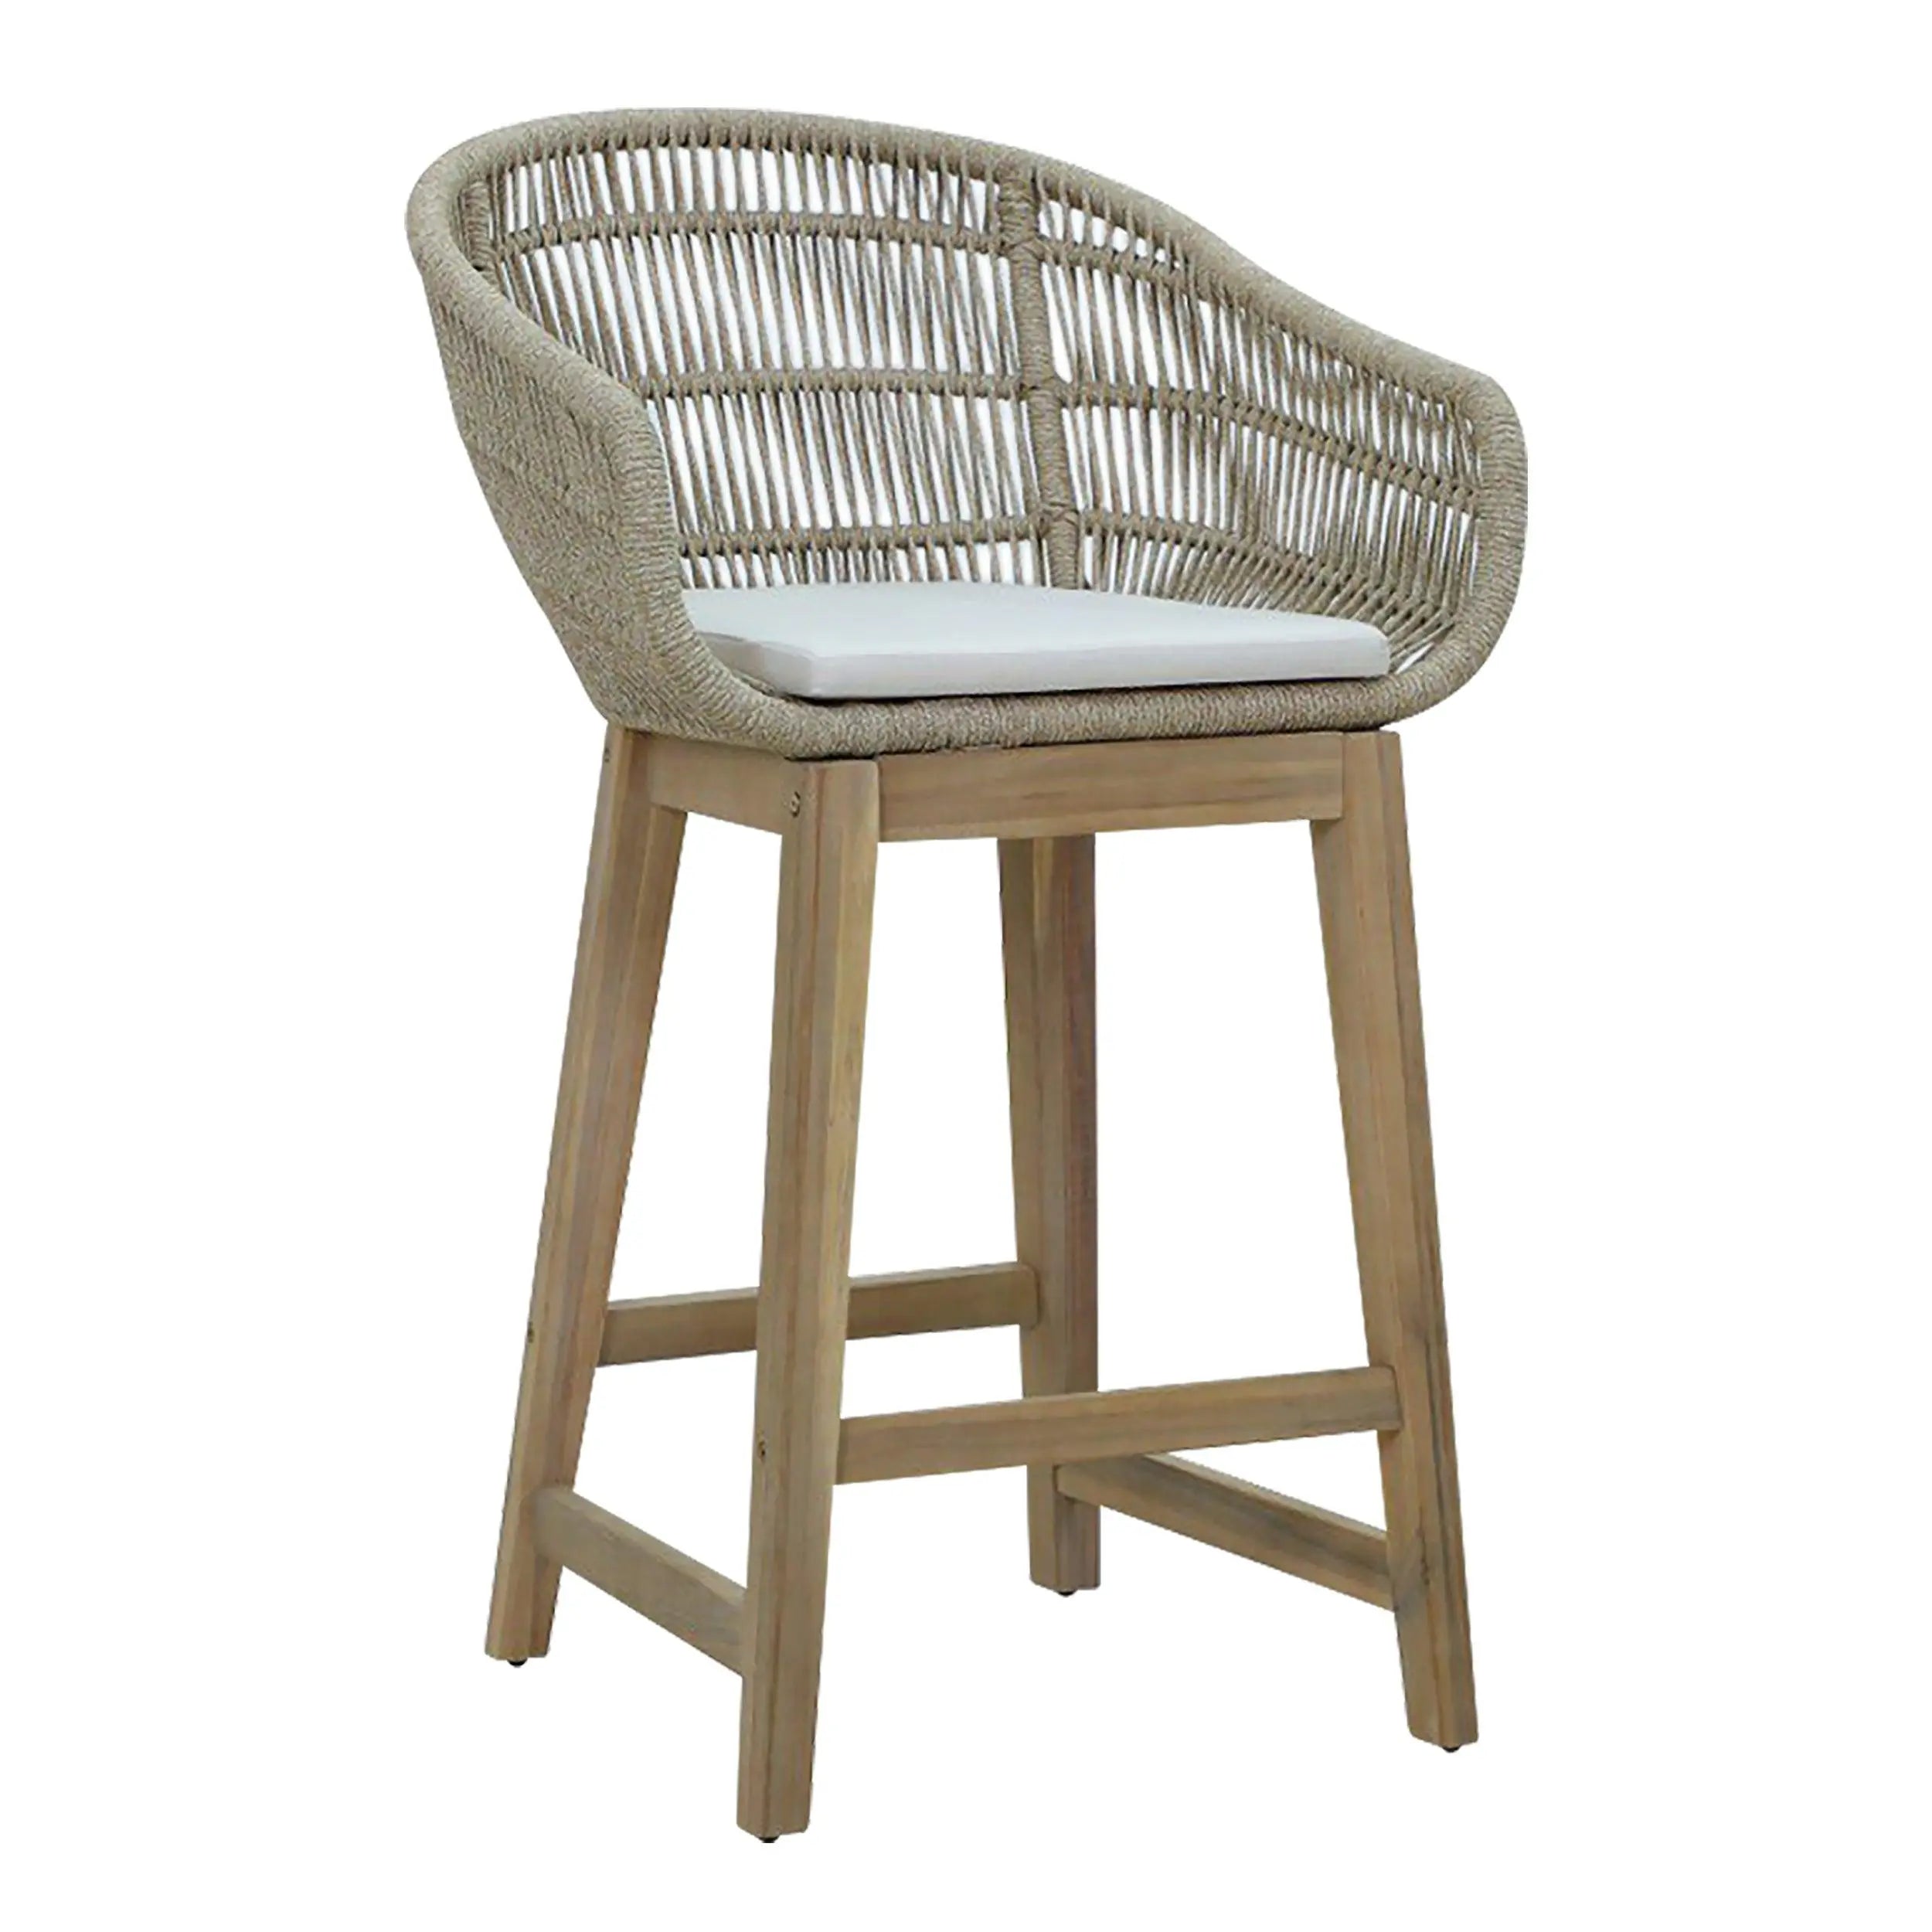 Pack de 2 taburetes altos LEYA madera lacada en color blanco mate con  asiento en color roble - Kiona Decoración